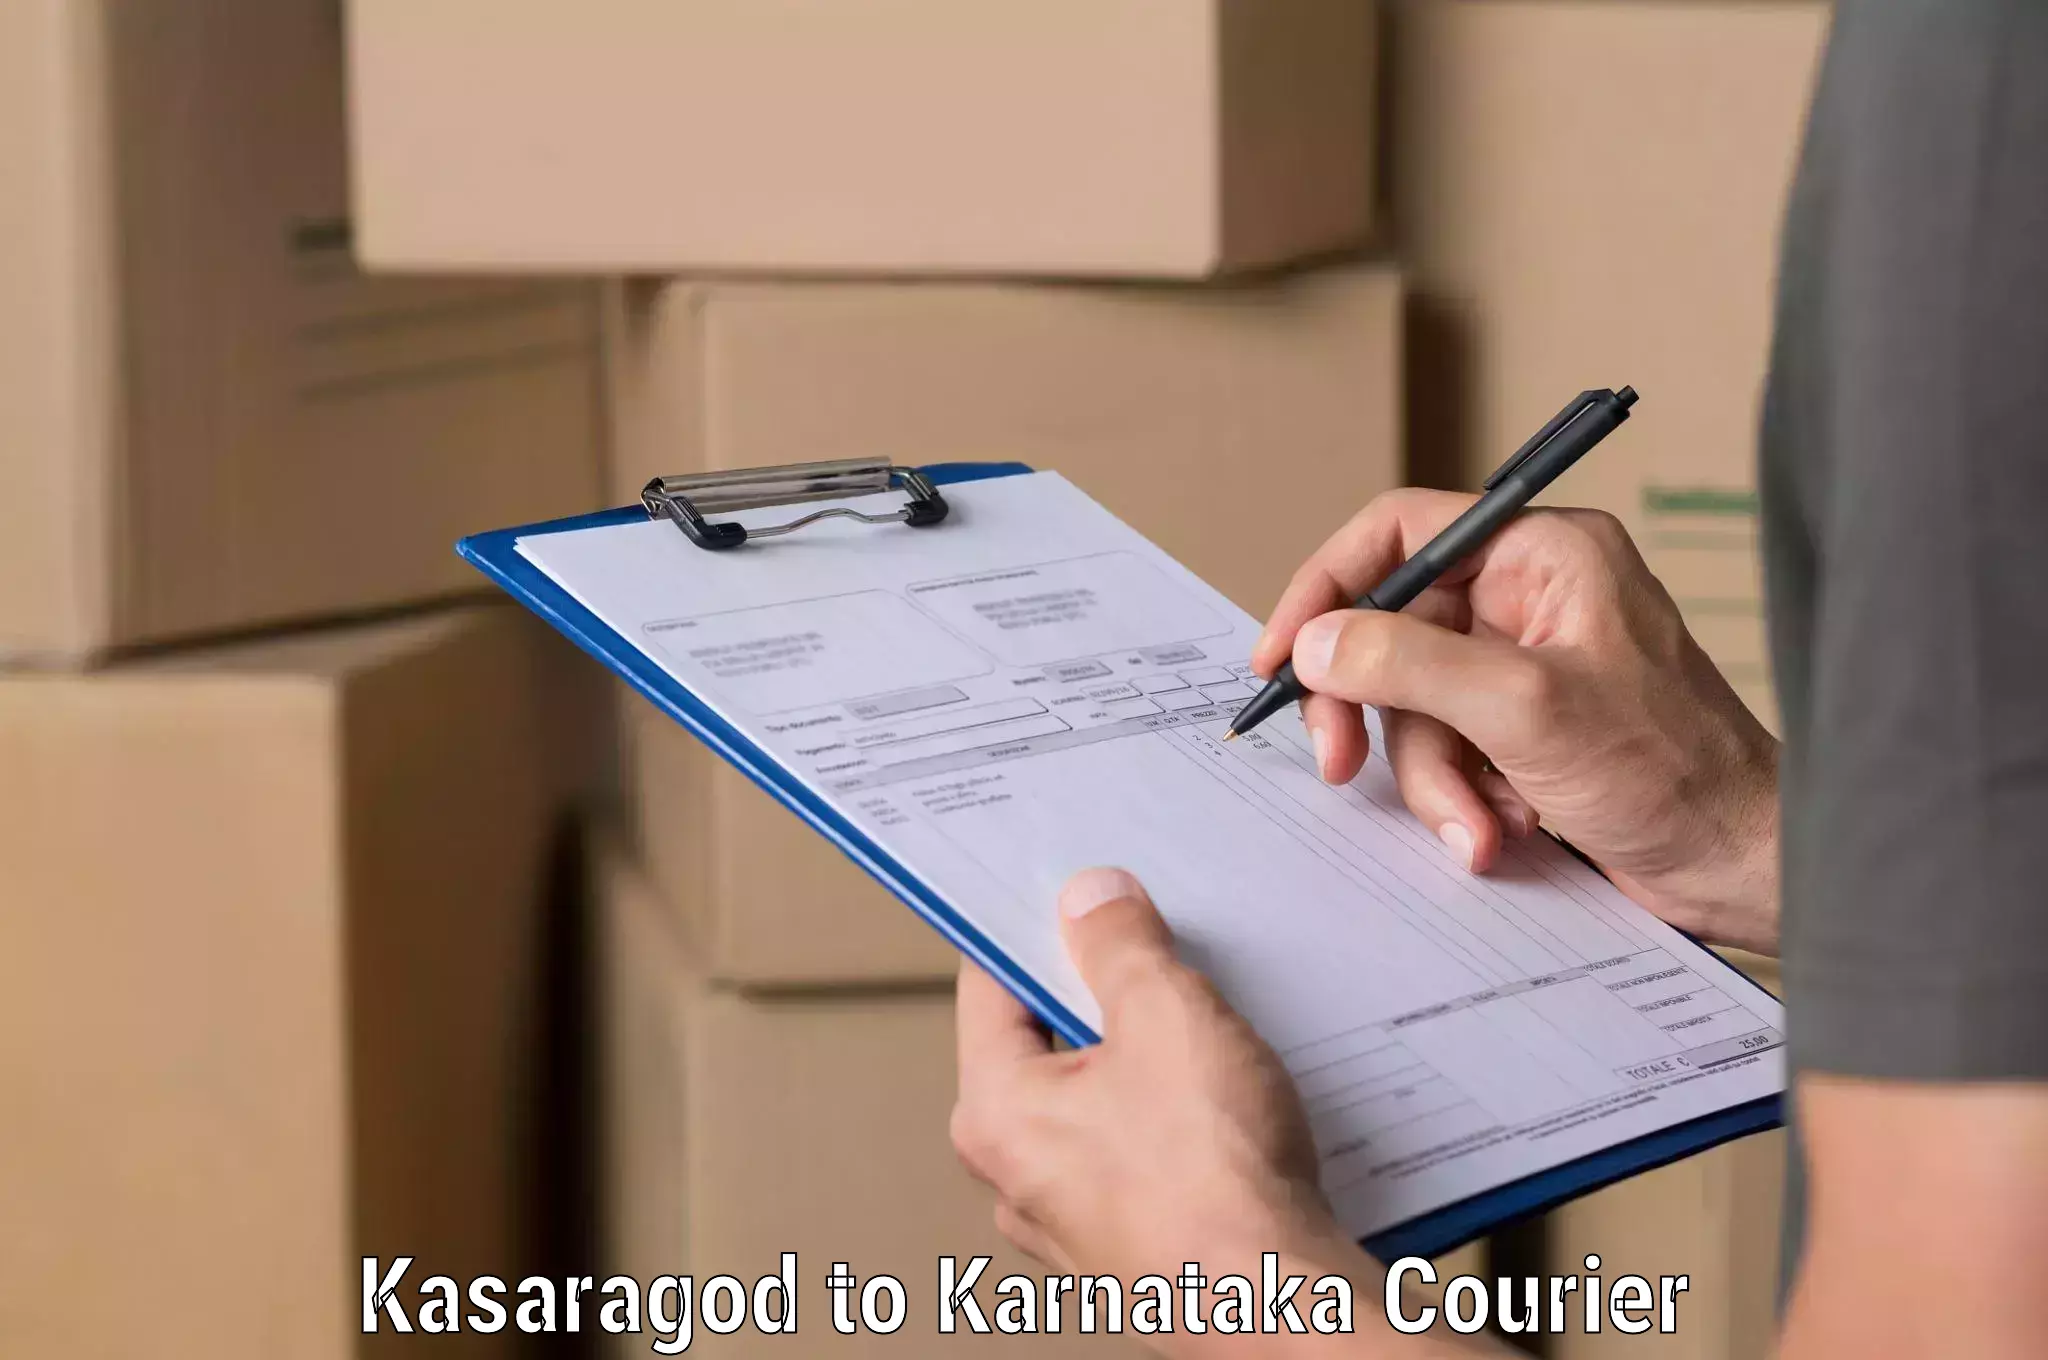 Business delivery service Kasaragod to Basavanagudi